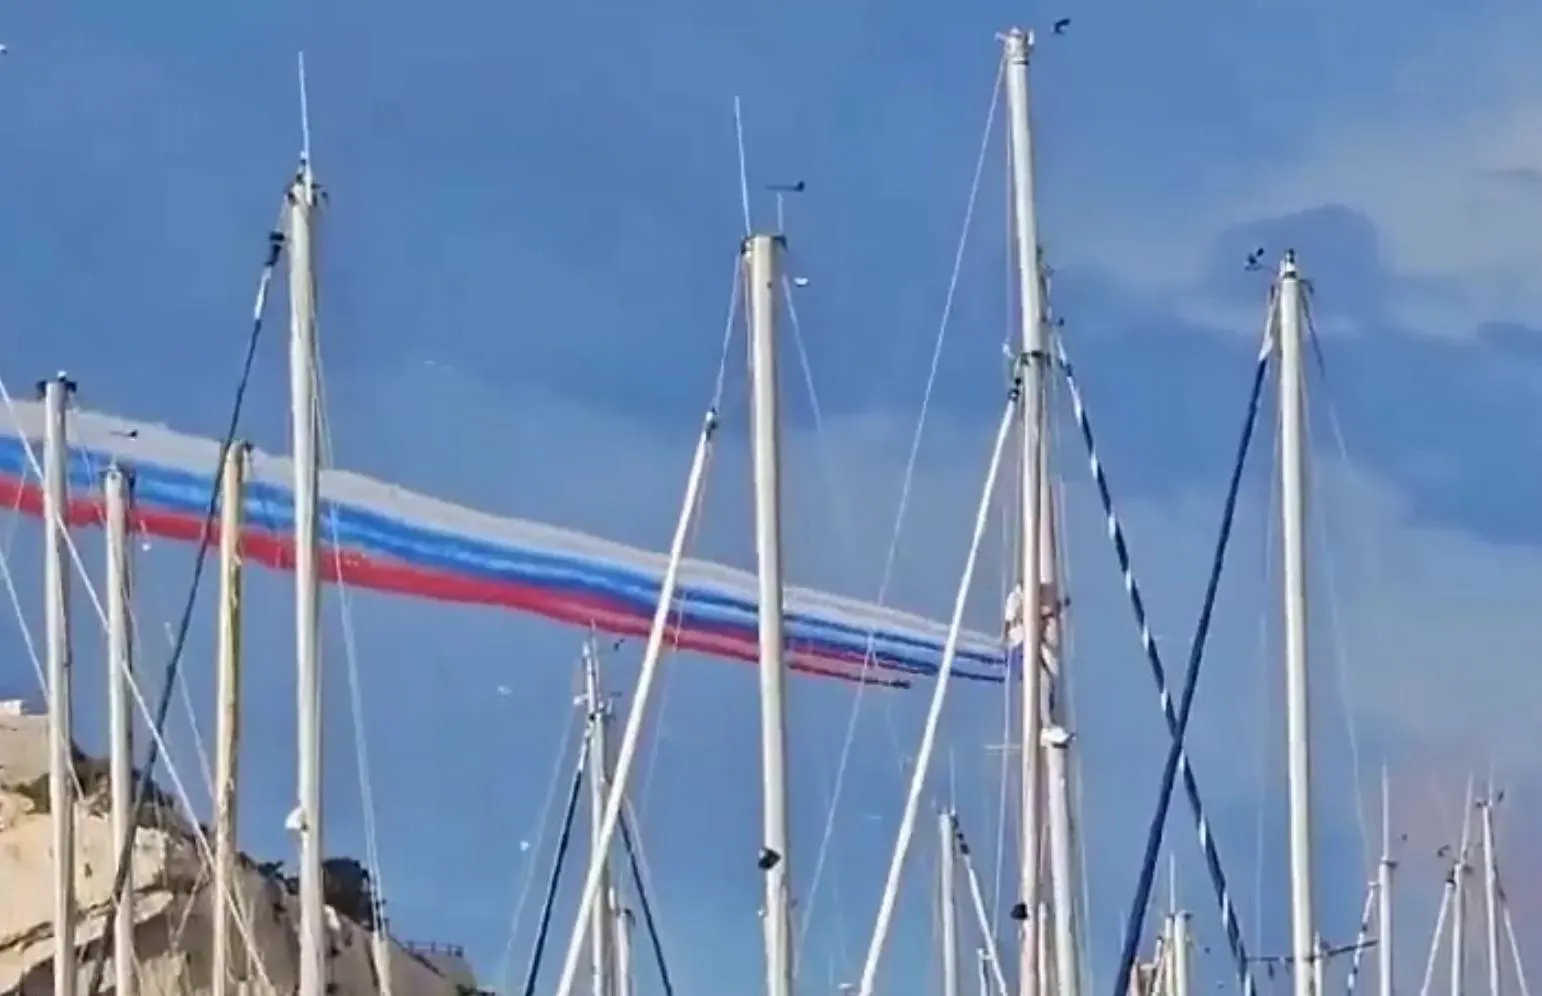 "Лицо Макрона представили?": Элитные пилоты ВВС Франции "нарисовали" флаг РФ в День Победы